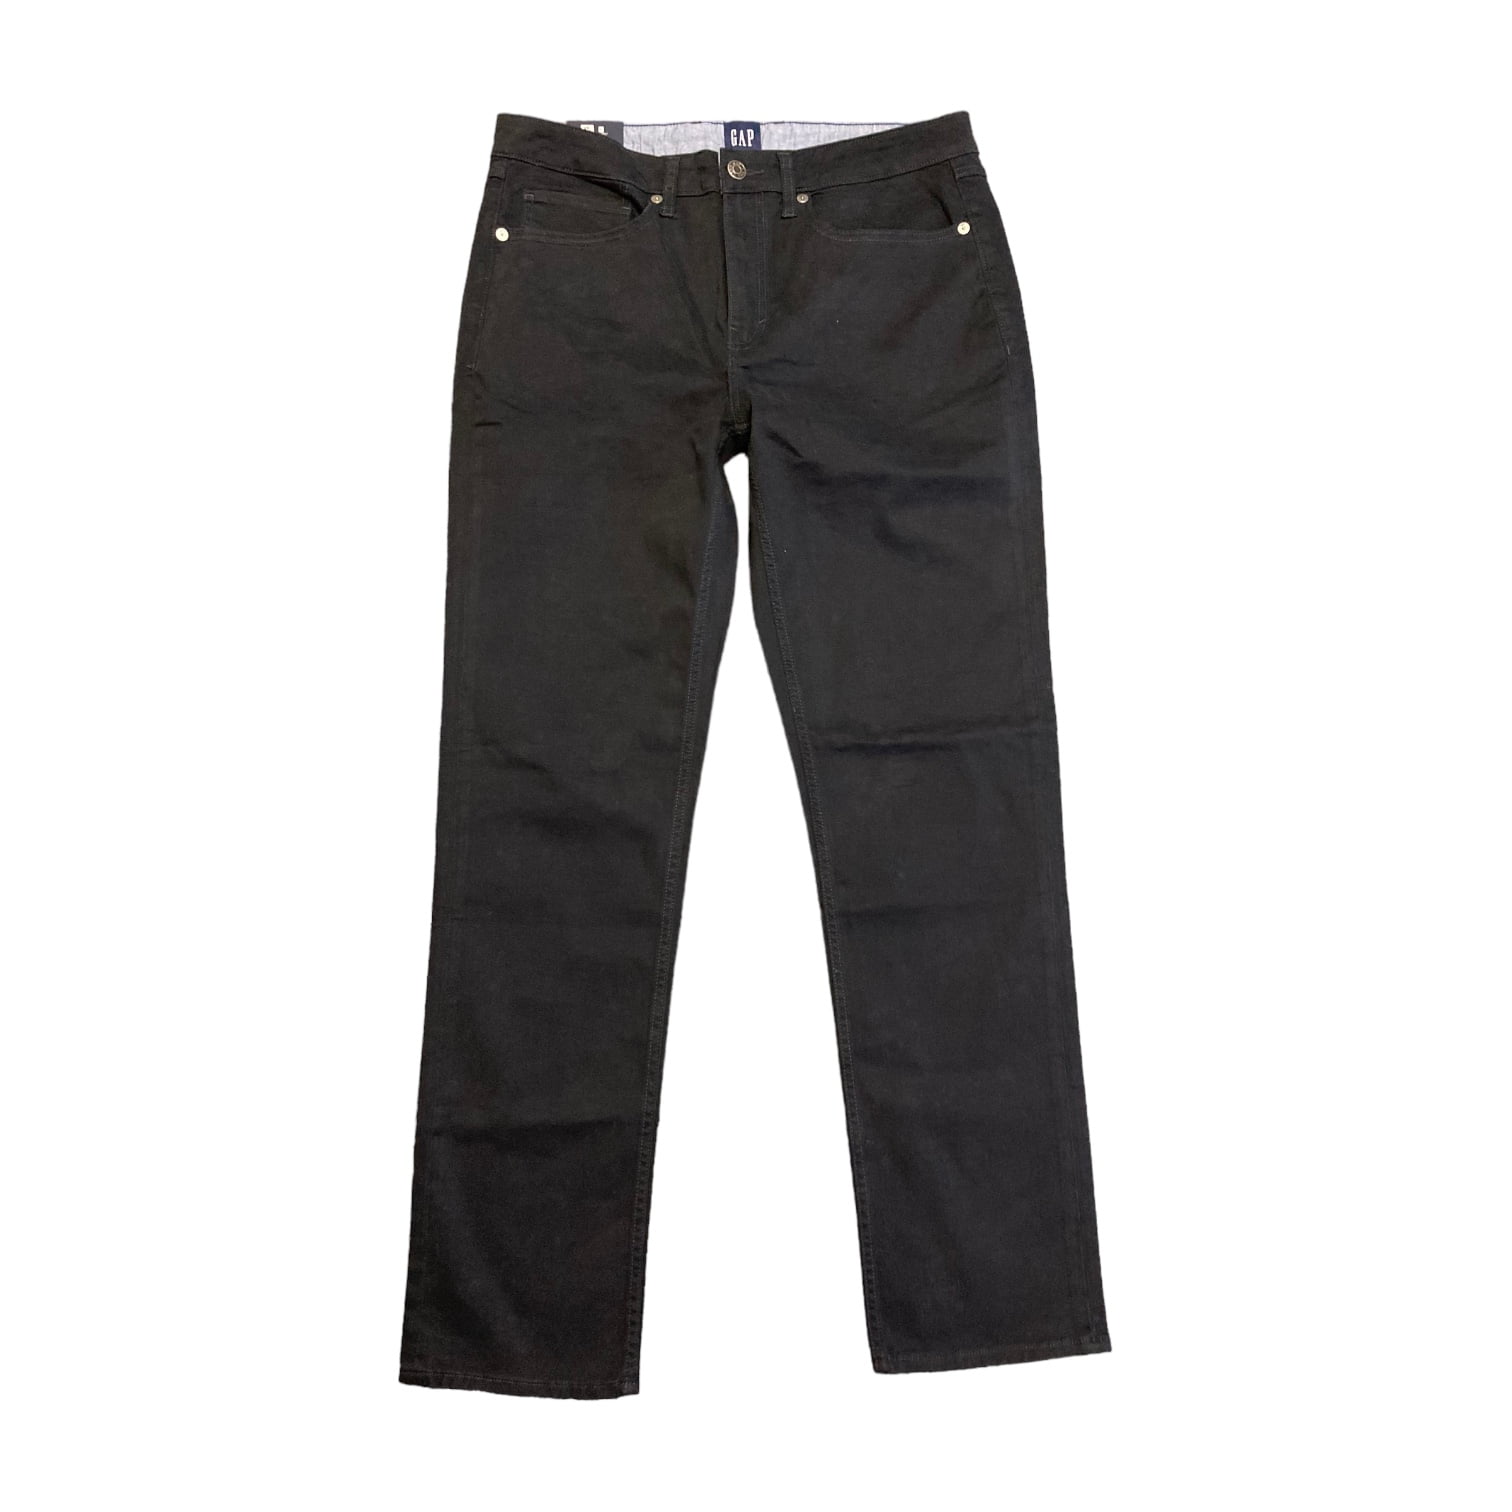 Gap Men's Slim Fit 5 Pocket Pant Limestone Size 32W X 30L Stretch Twill